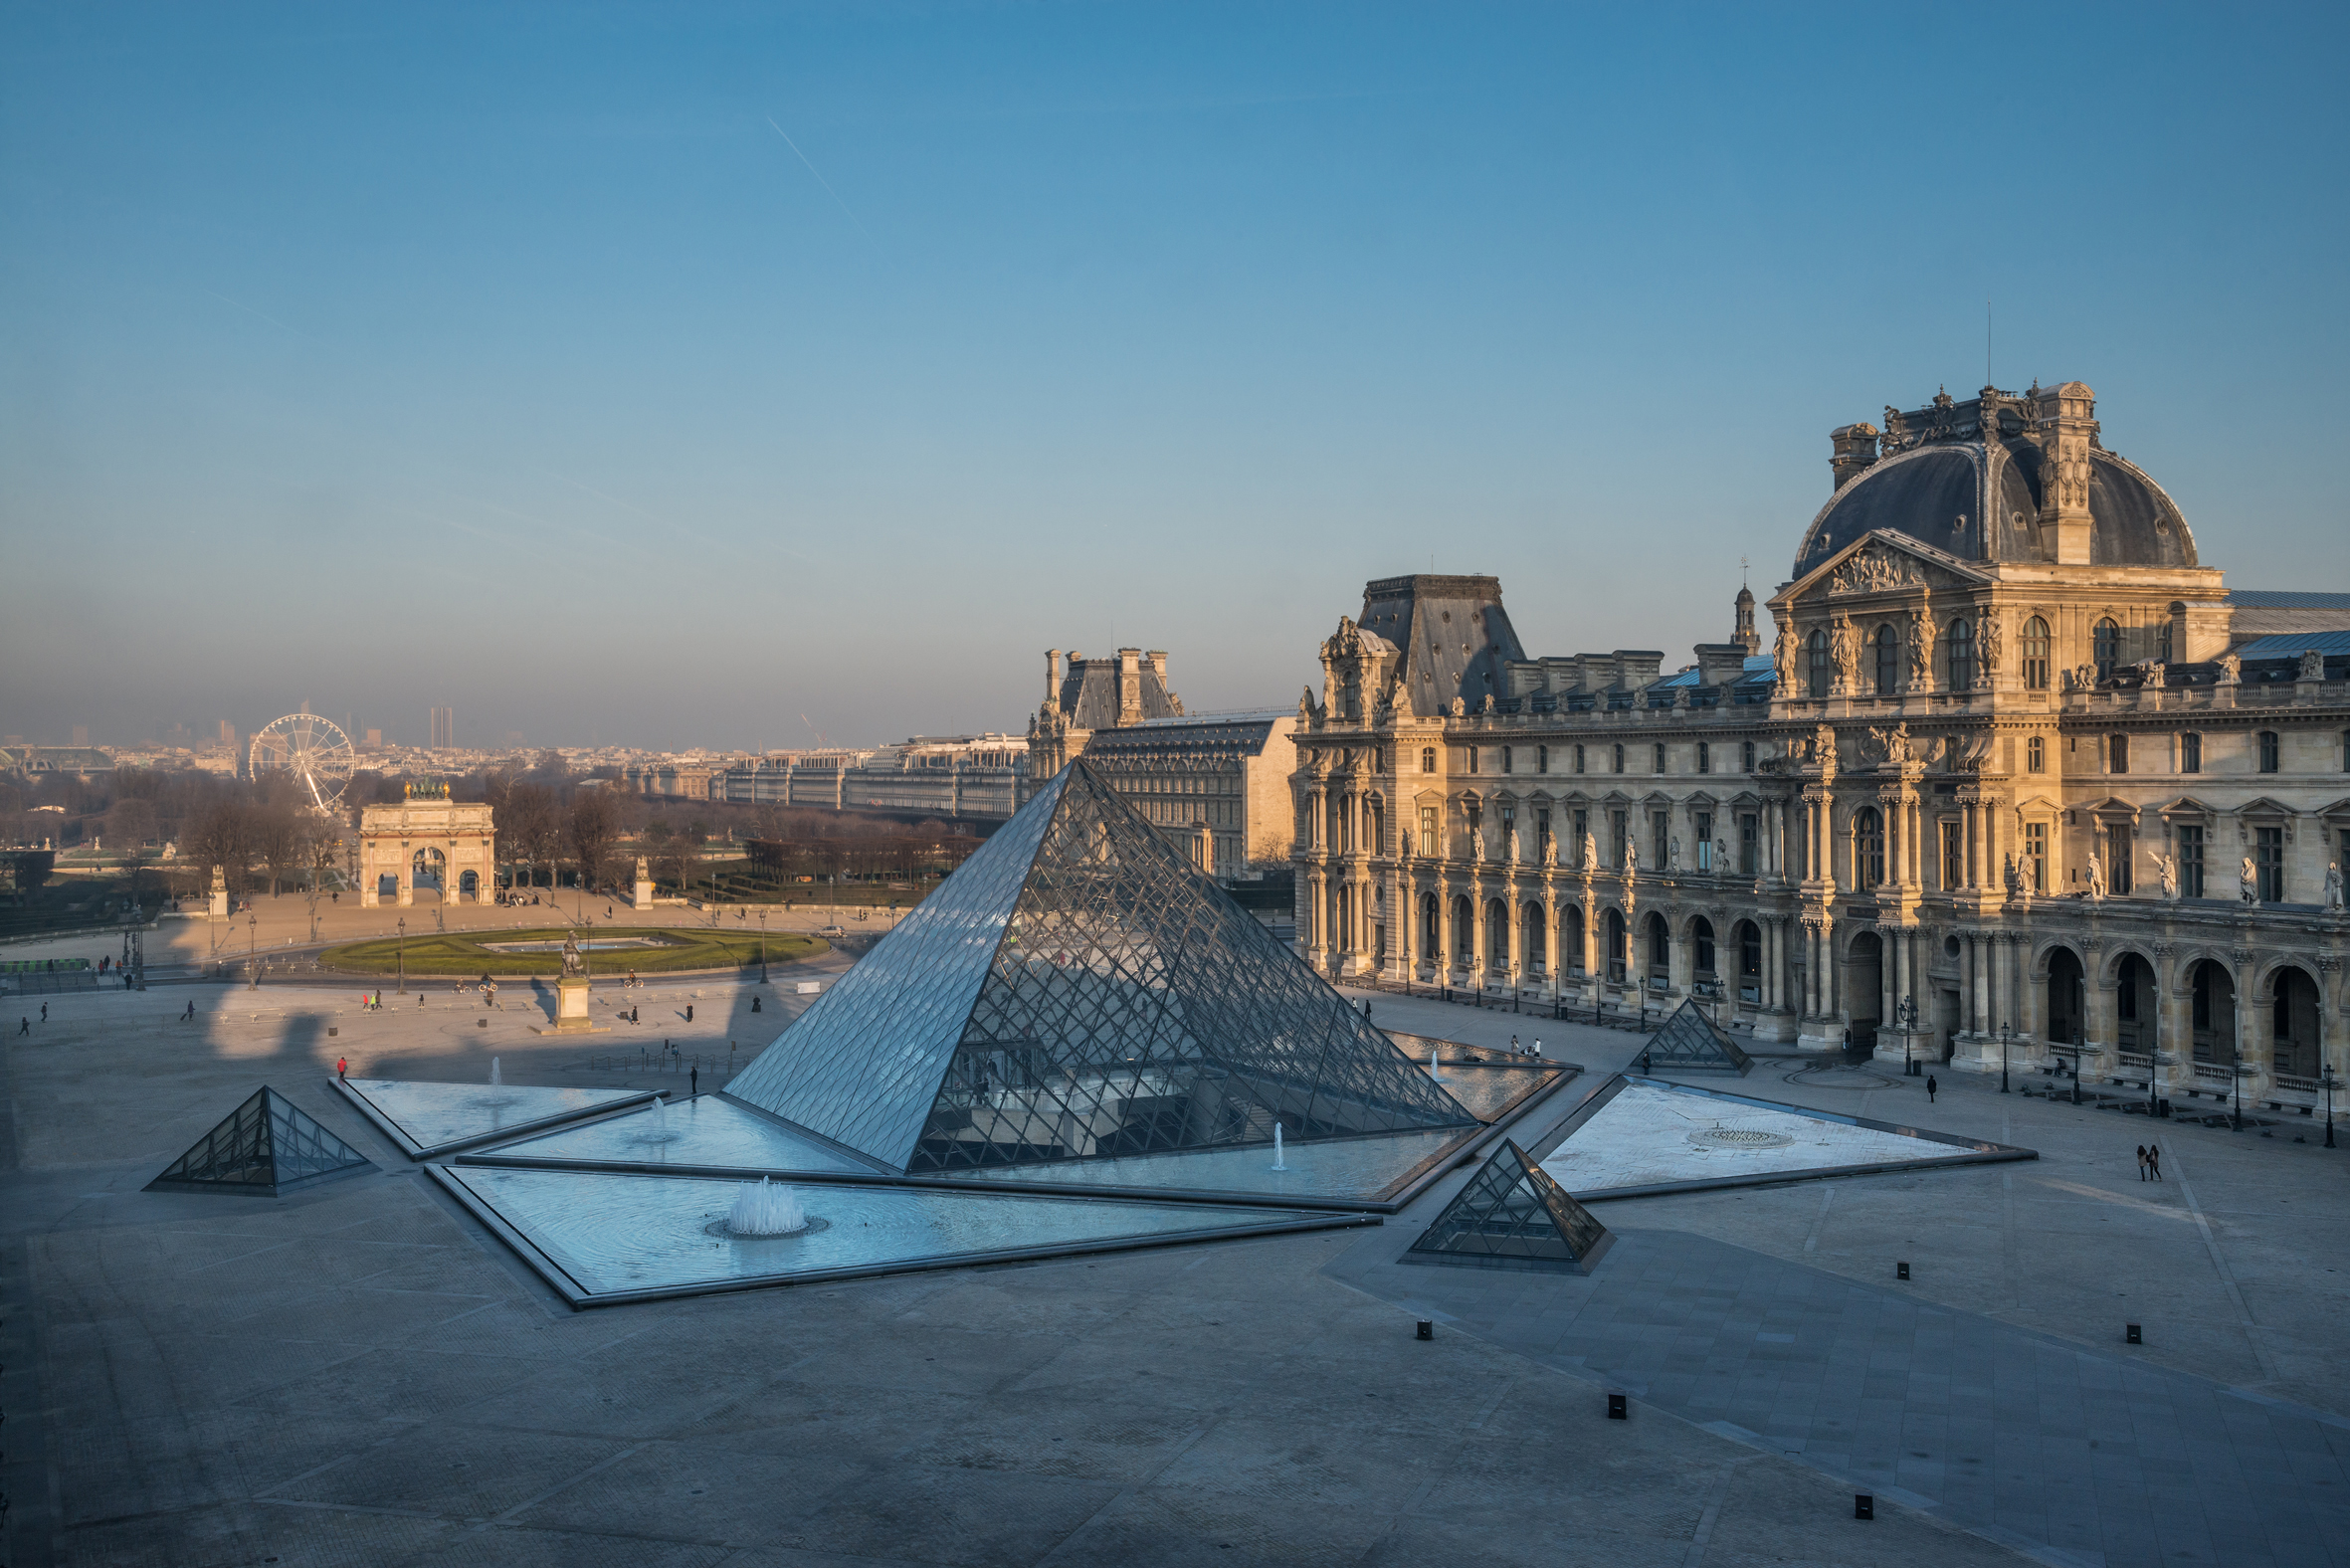 フランスのクルーズ会社ポナンと世界最大級を誇るルーヴル美術館が提供　文化と美術を楽しむ2つのクルーズを発表